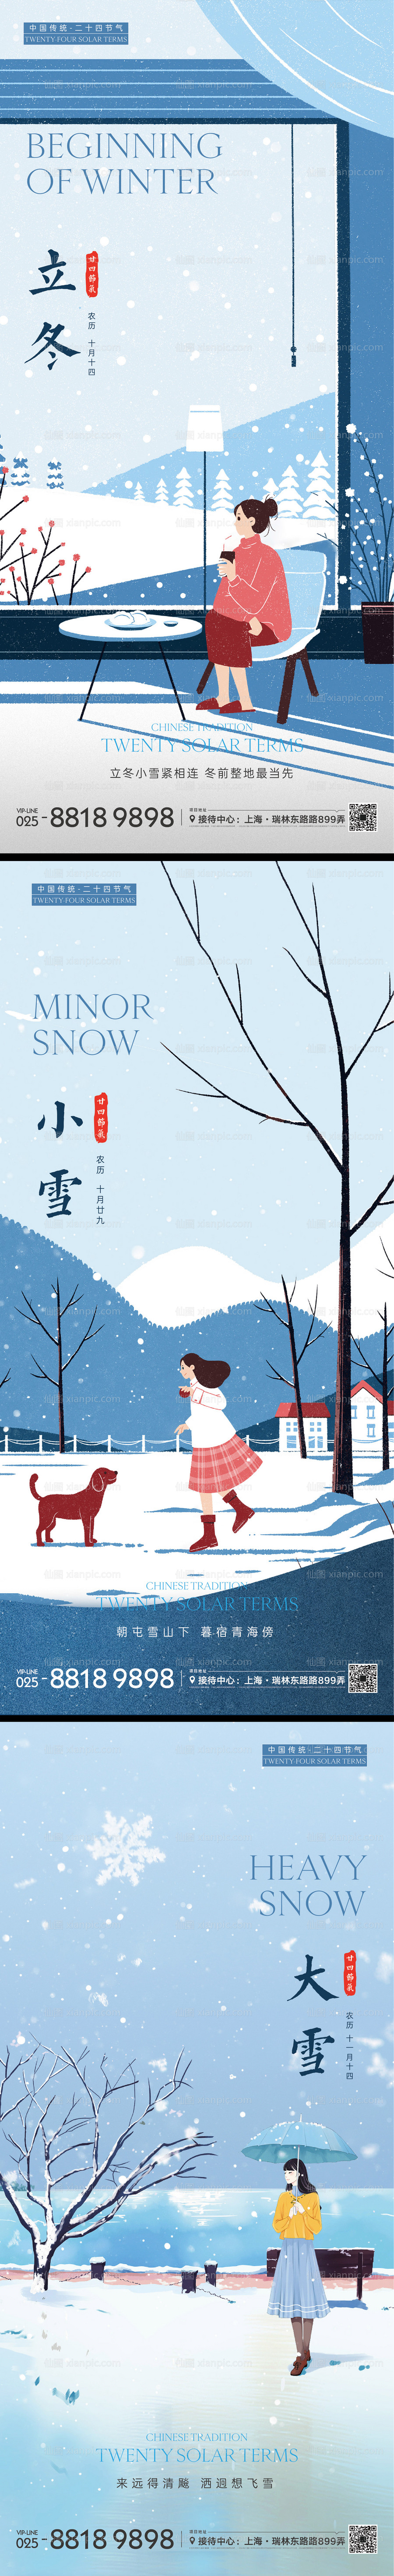 素材乐-立冬小雪大雪插画海报